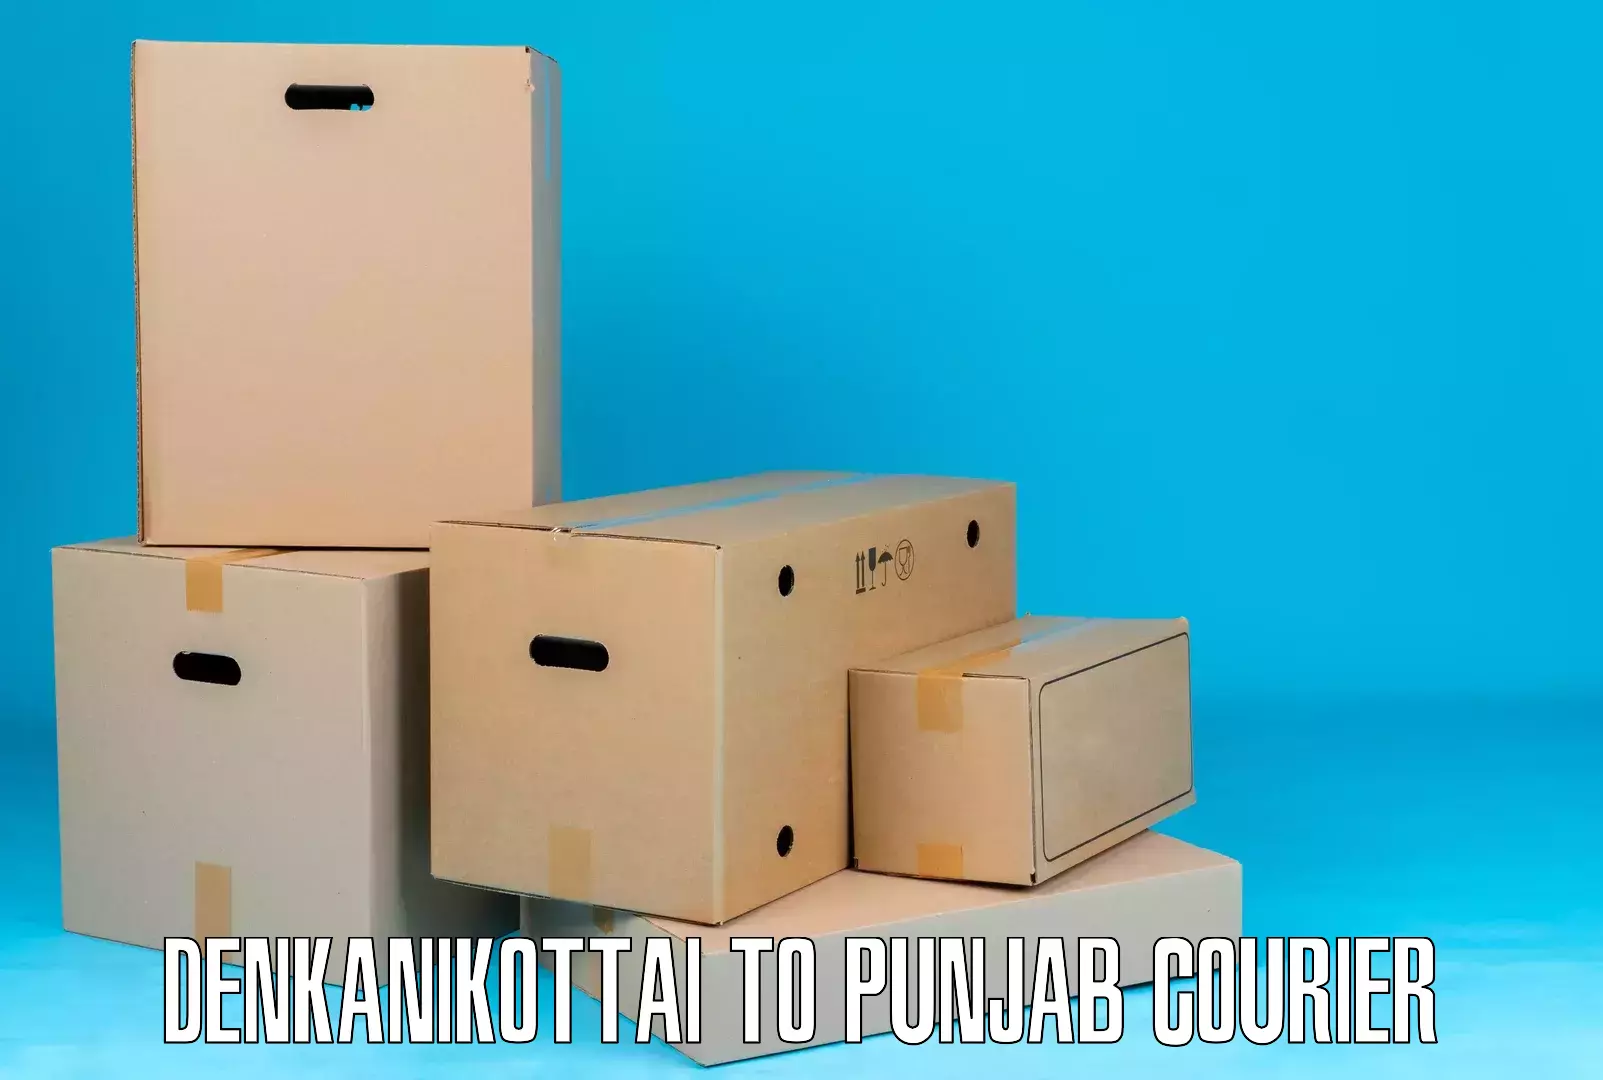 Reliable courier services Denkanikottai to Samana